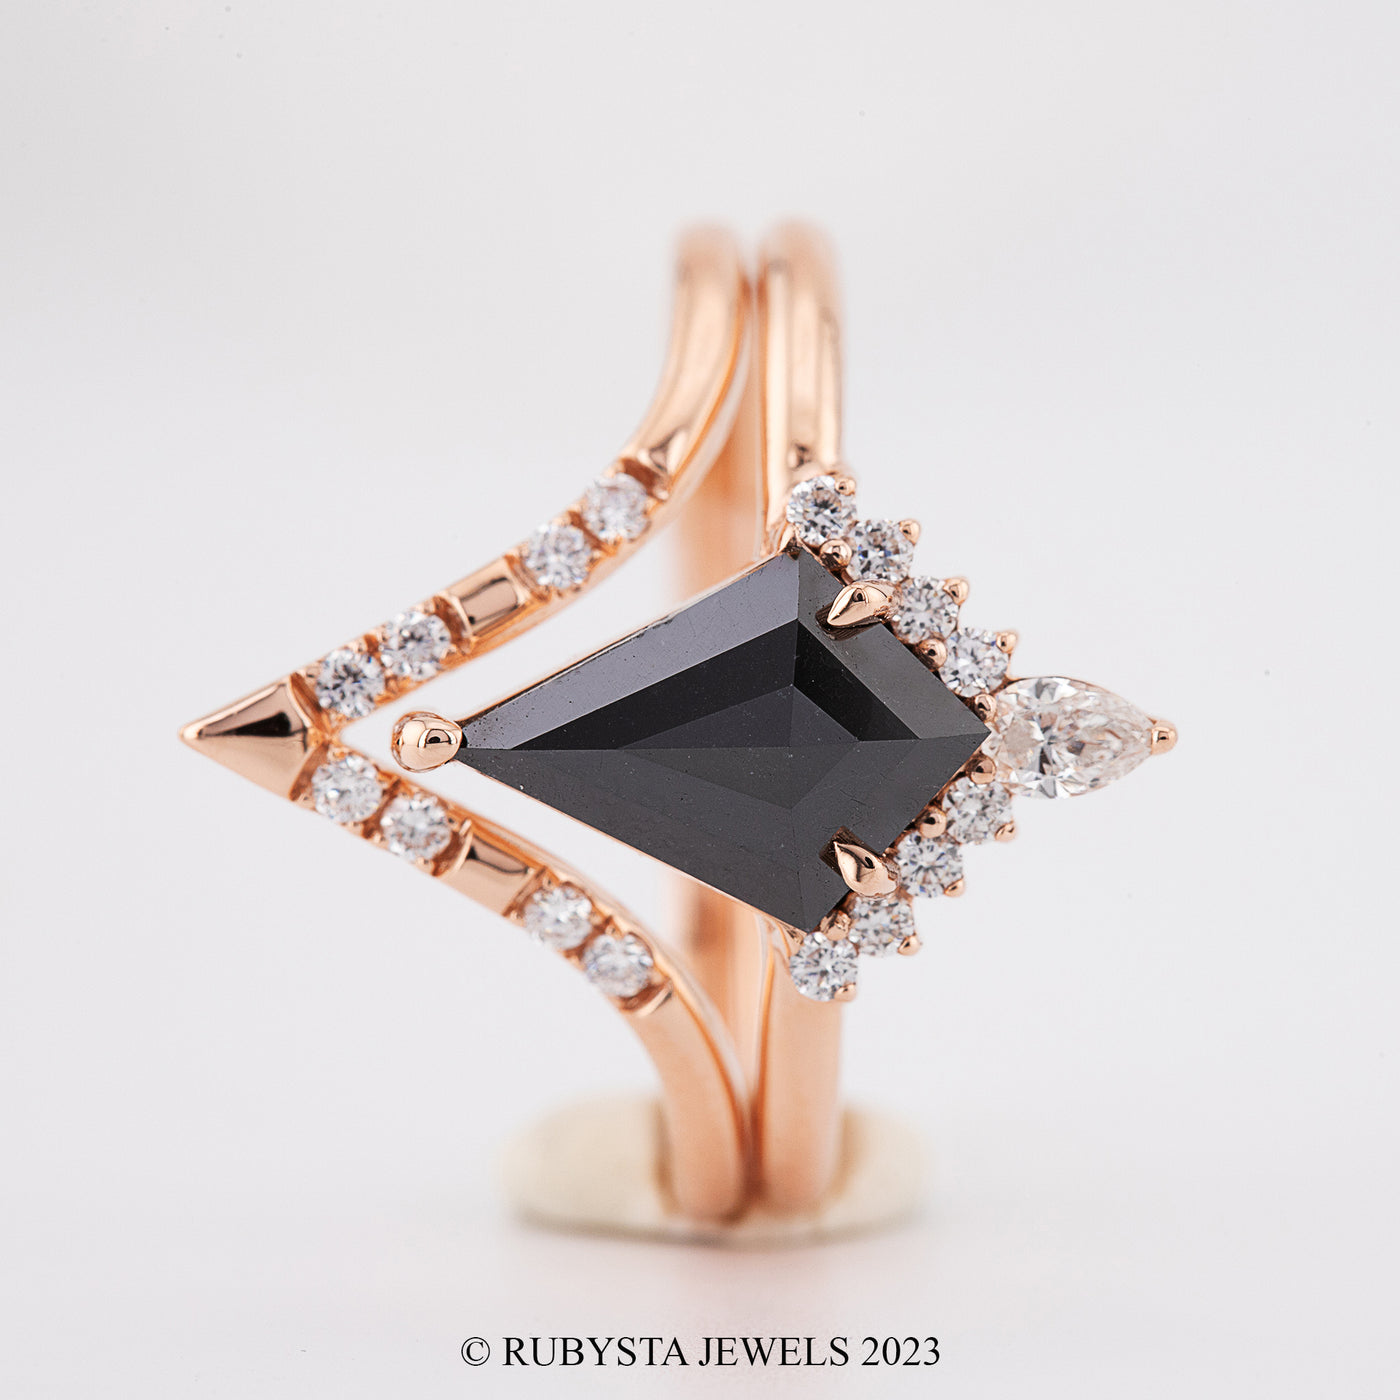 Black Kite diamond ring